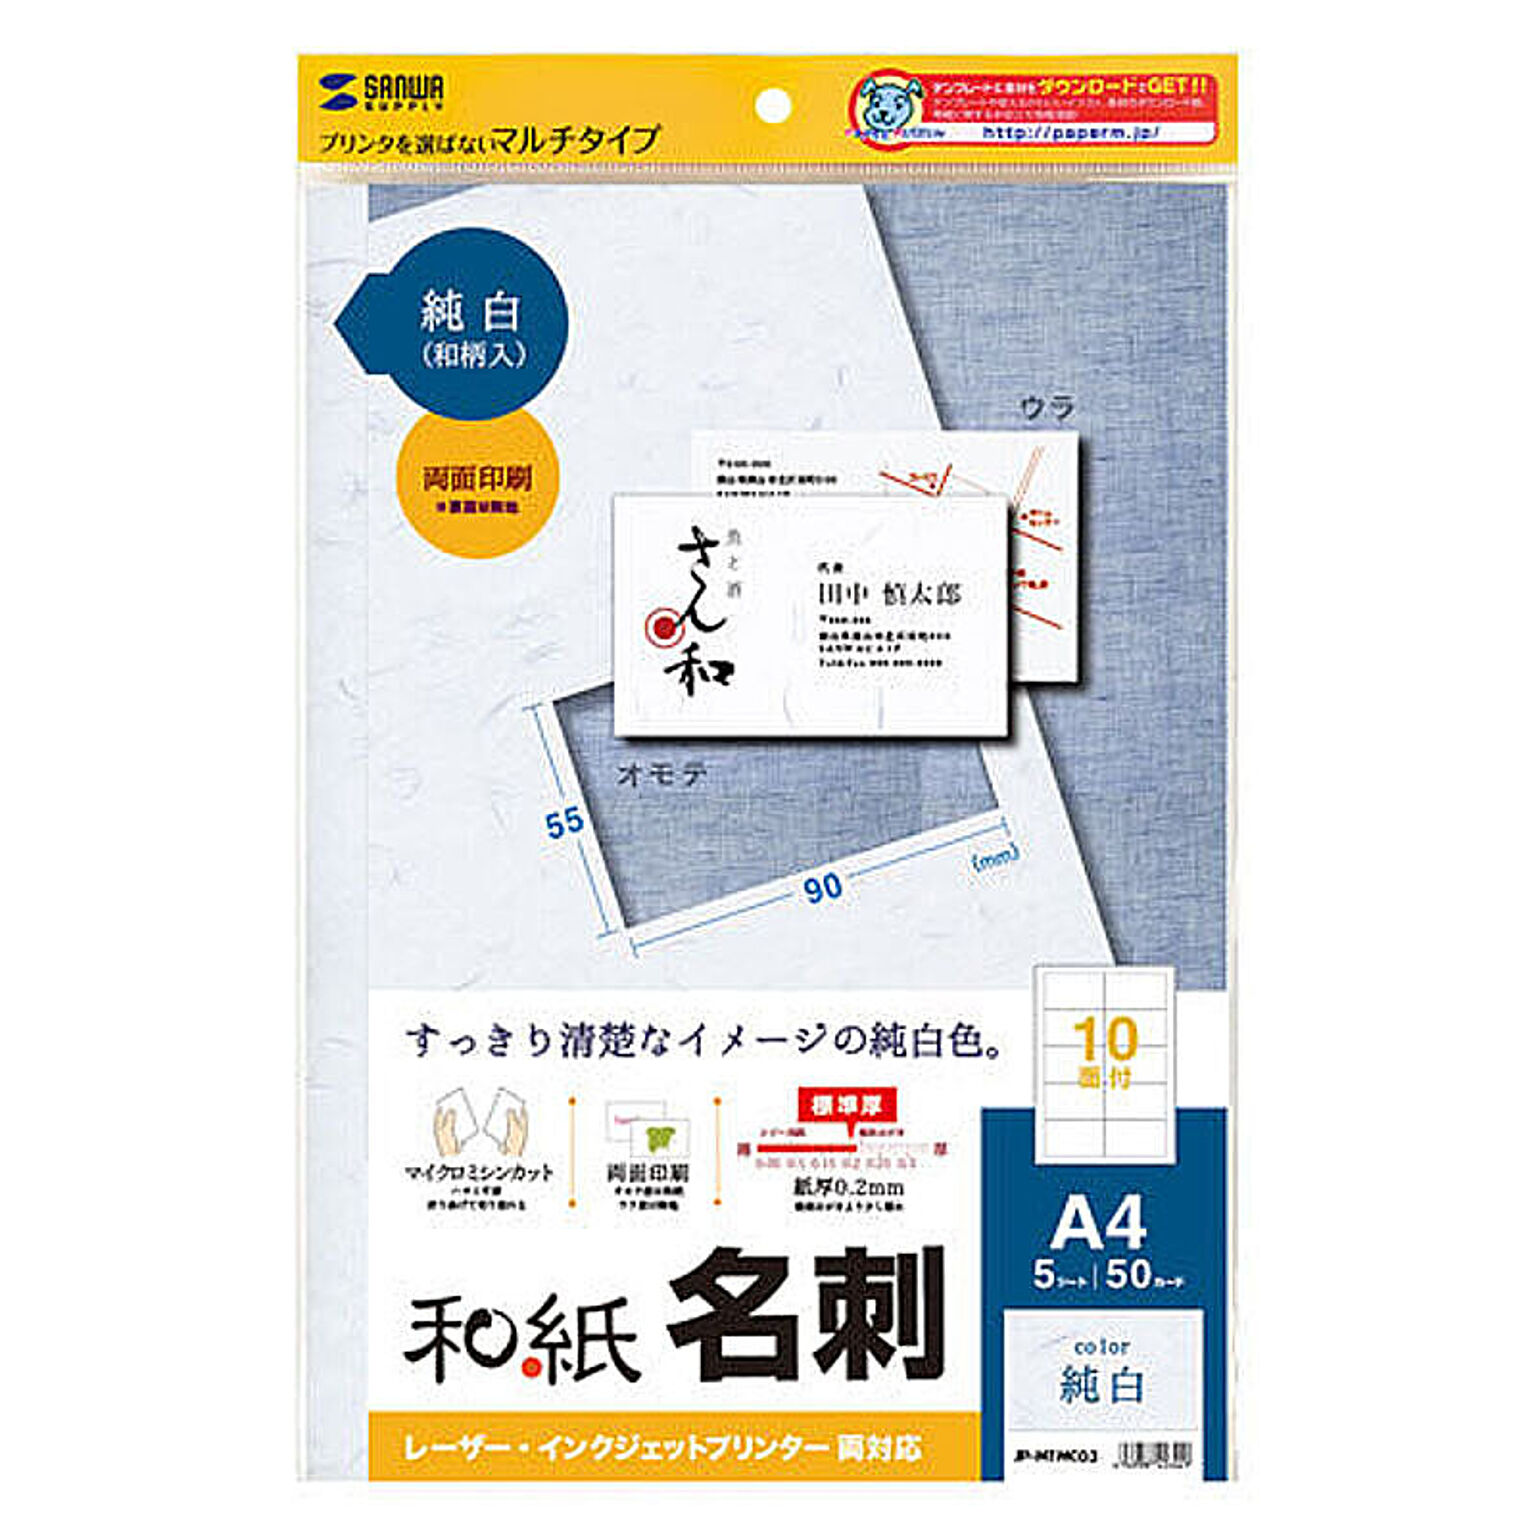 サンワサプライ インクジェット和紙名刺カード(雪) JP-MTMC03 管理No. 4969887426449